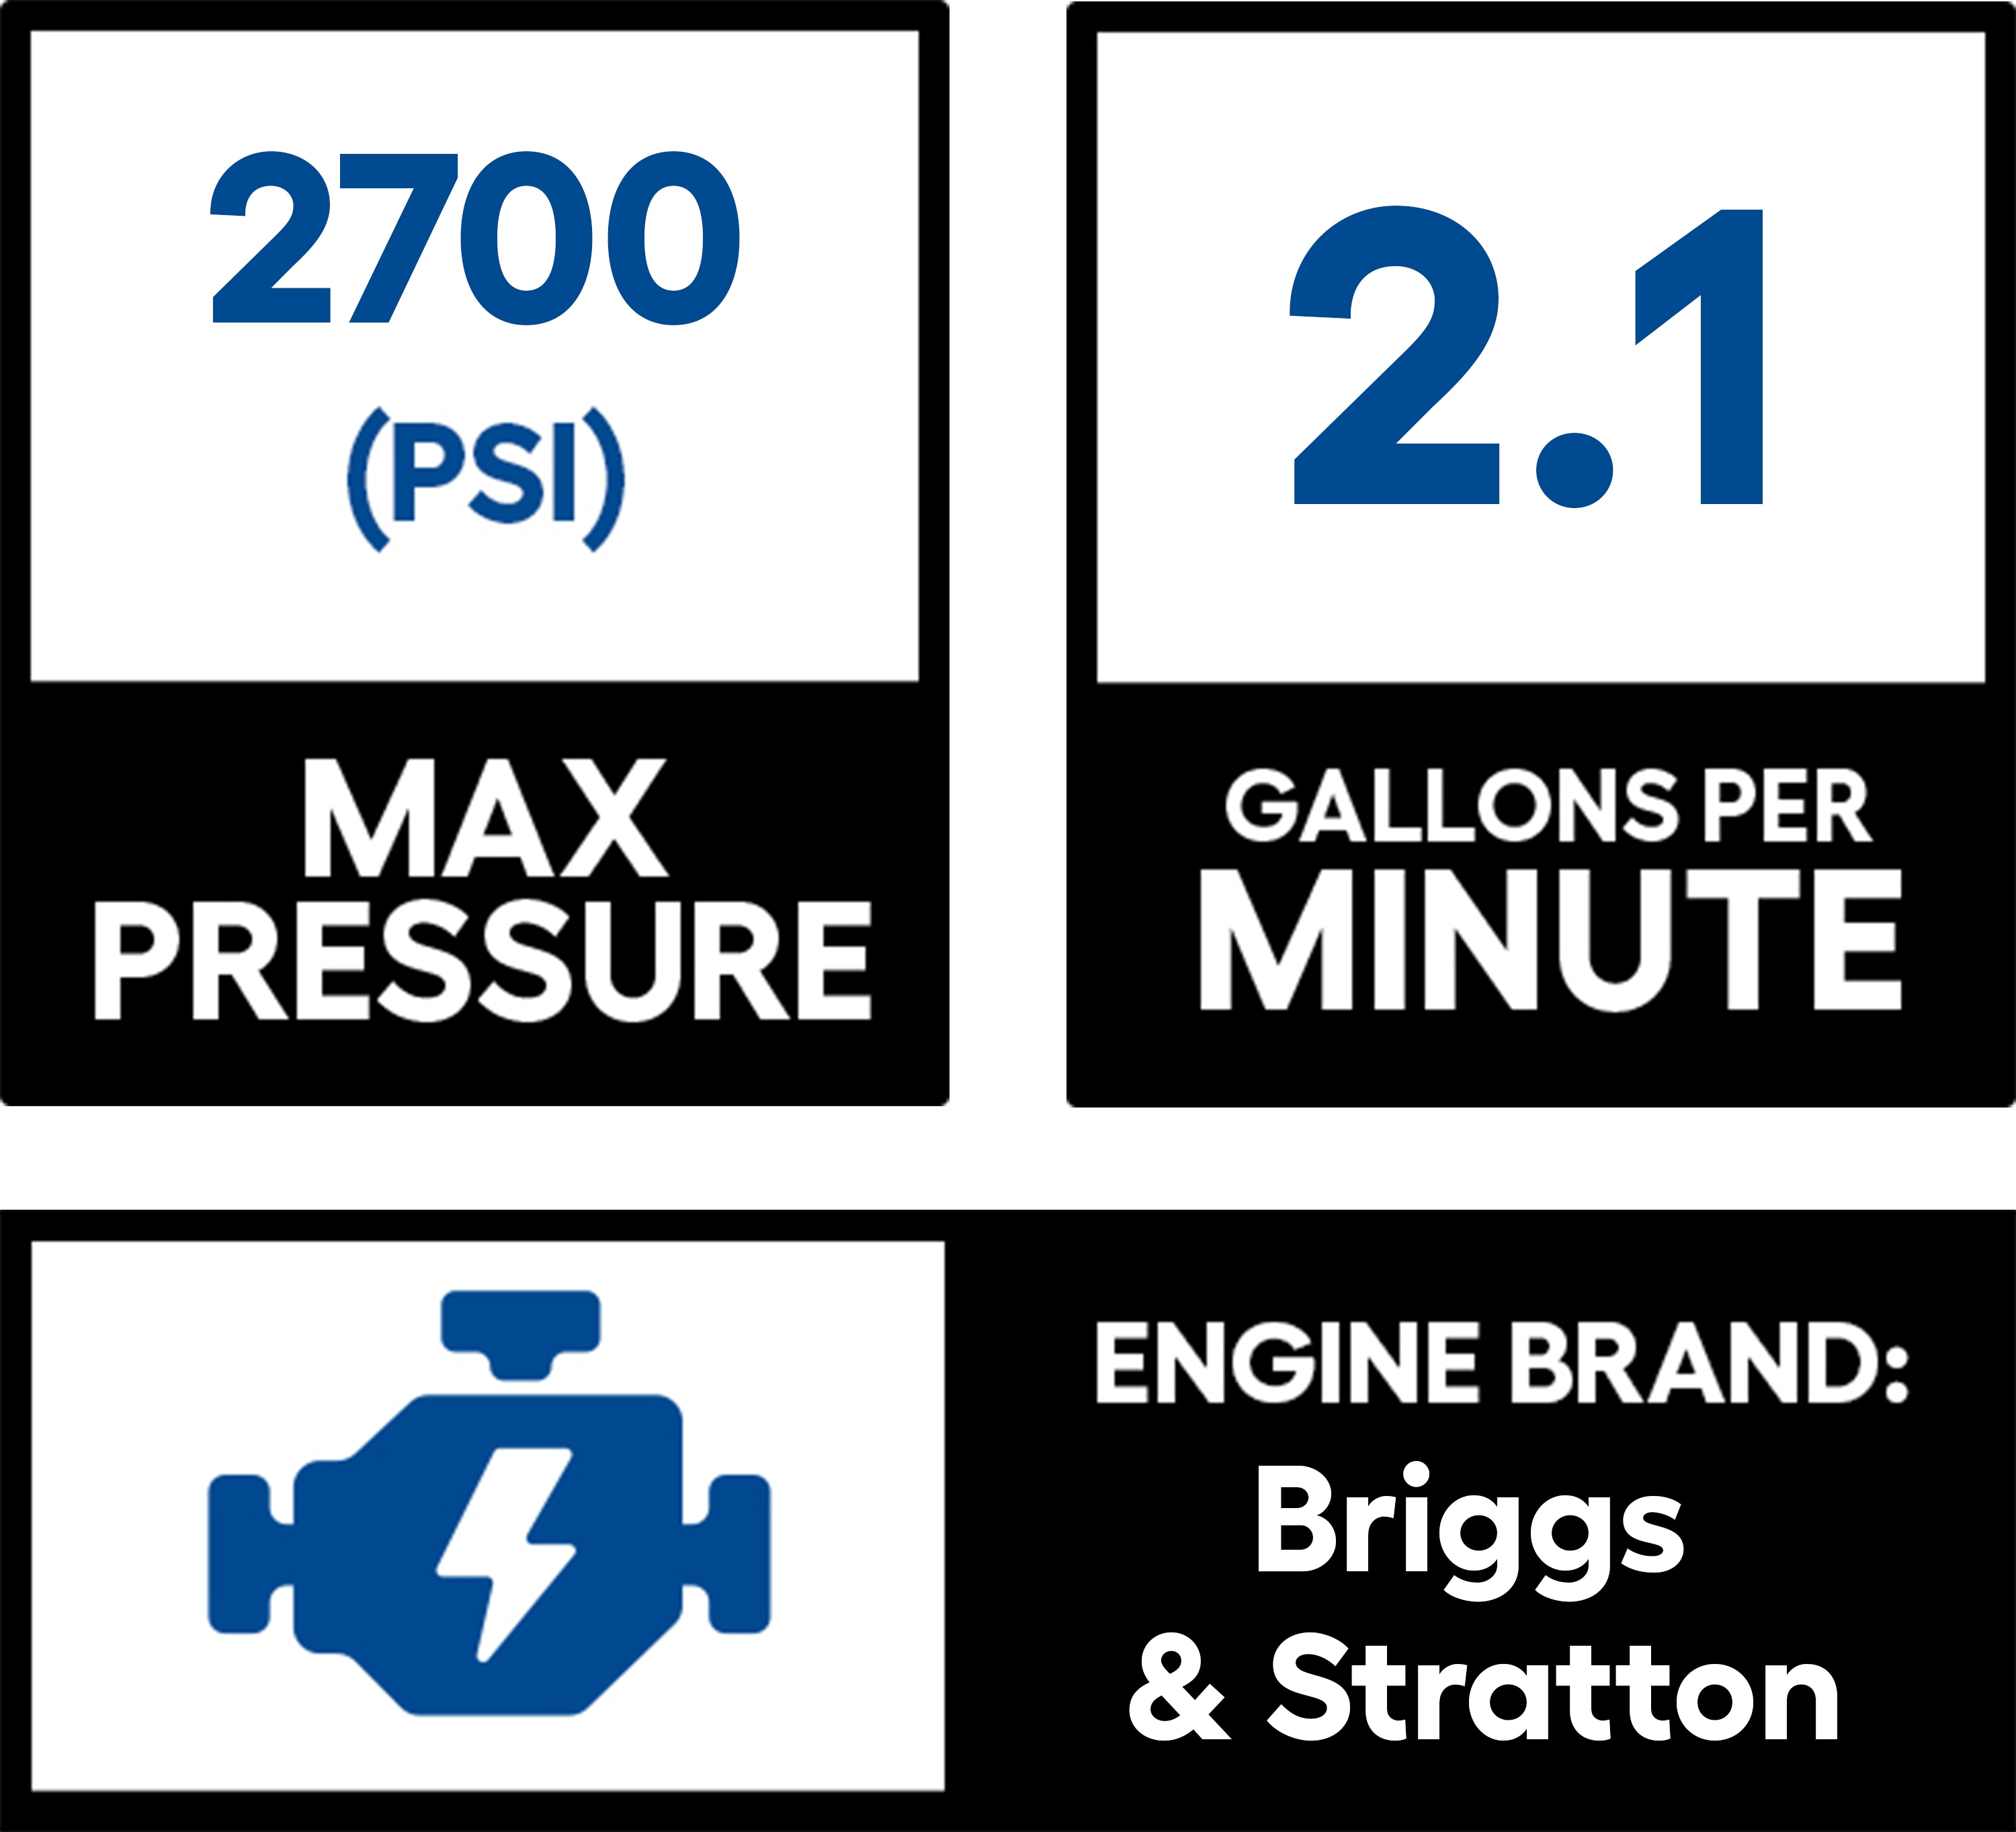 Briggs & Stratton Small Engine 649025052 Gas Powered Pressure Washer, Schewels Home